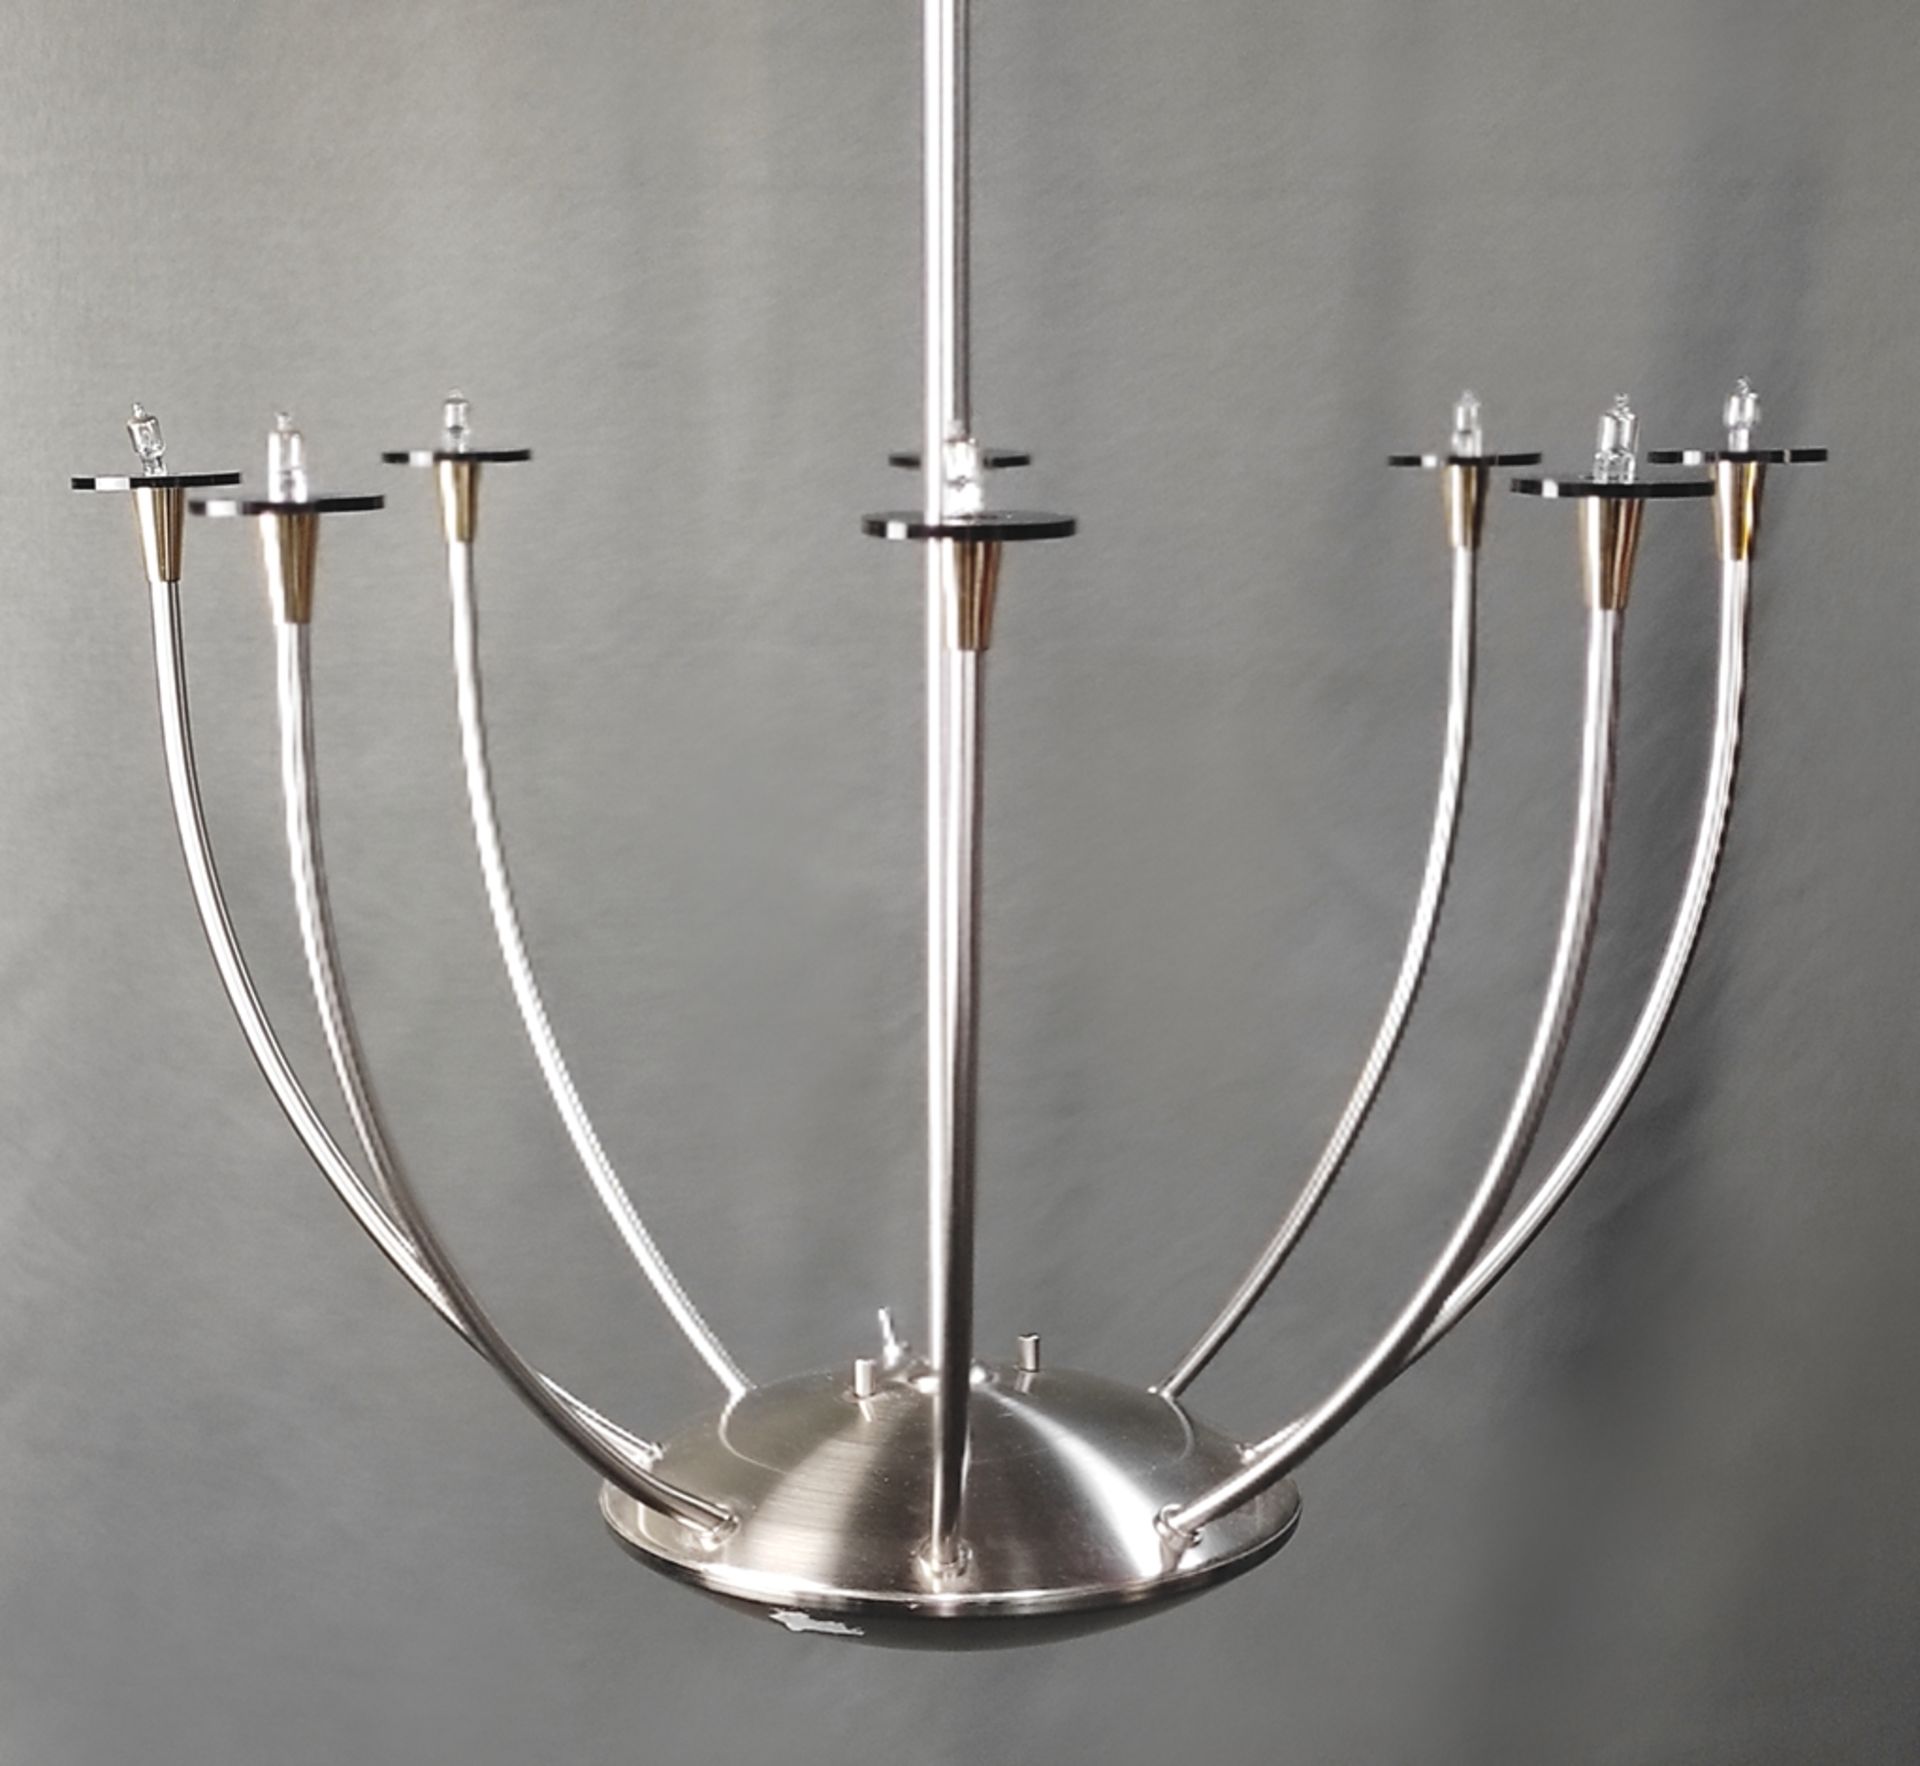 Design-Deckenlampe, Baulmann Leuchten, wohl 1970er Jahre, verchromtes Metallgestell, neun Arme mit